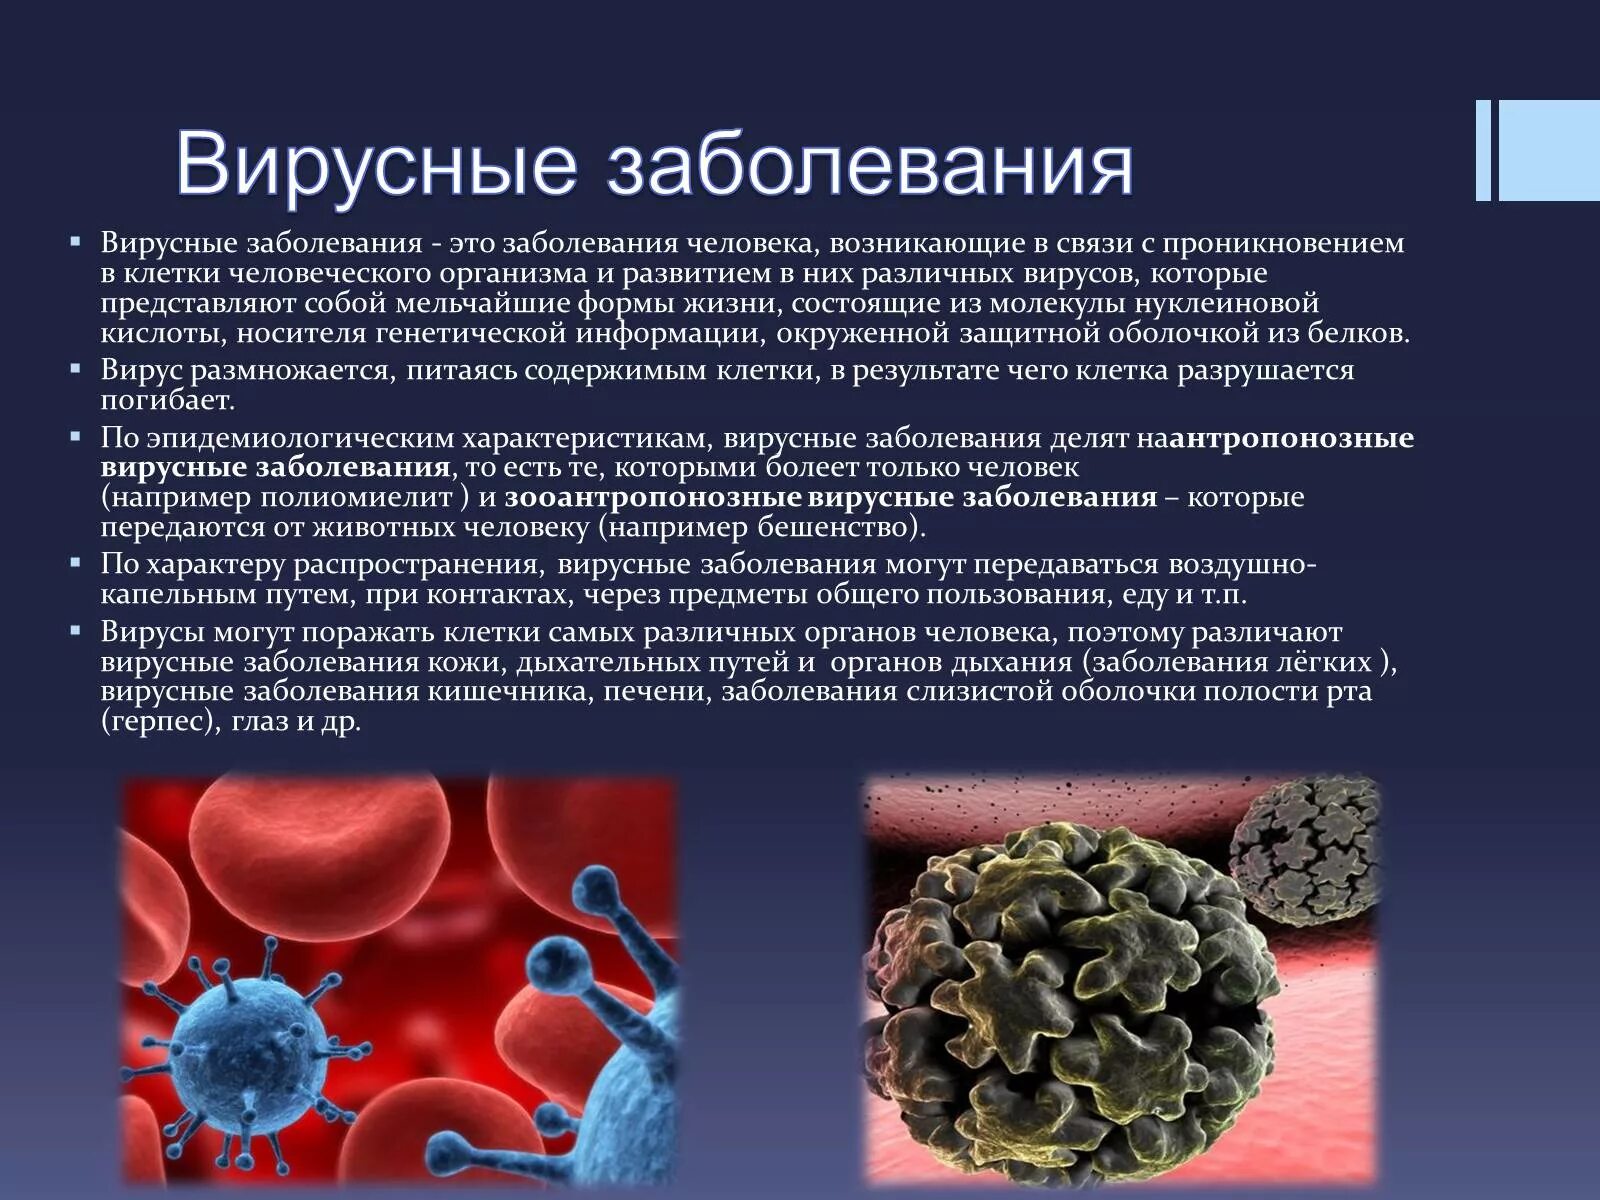 Вирус является формой жизни. Вирусные заболевания. Вирусные инфекции заболевания. Вирусы инфекционных заболеваний. Инфекционные и вирусные заболевания человека.